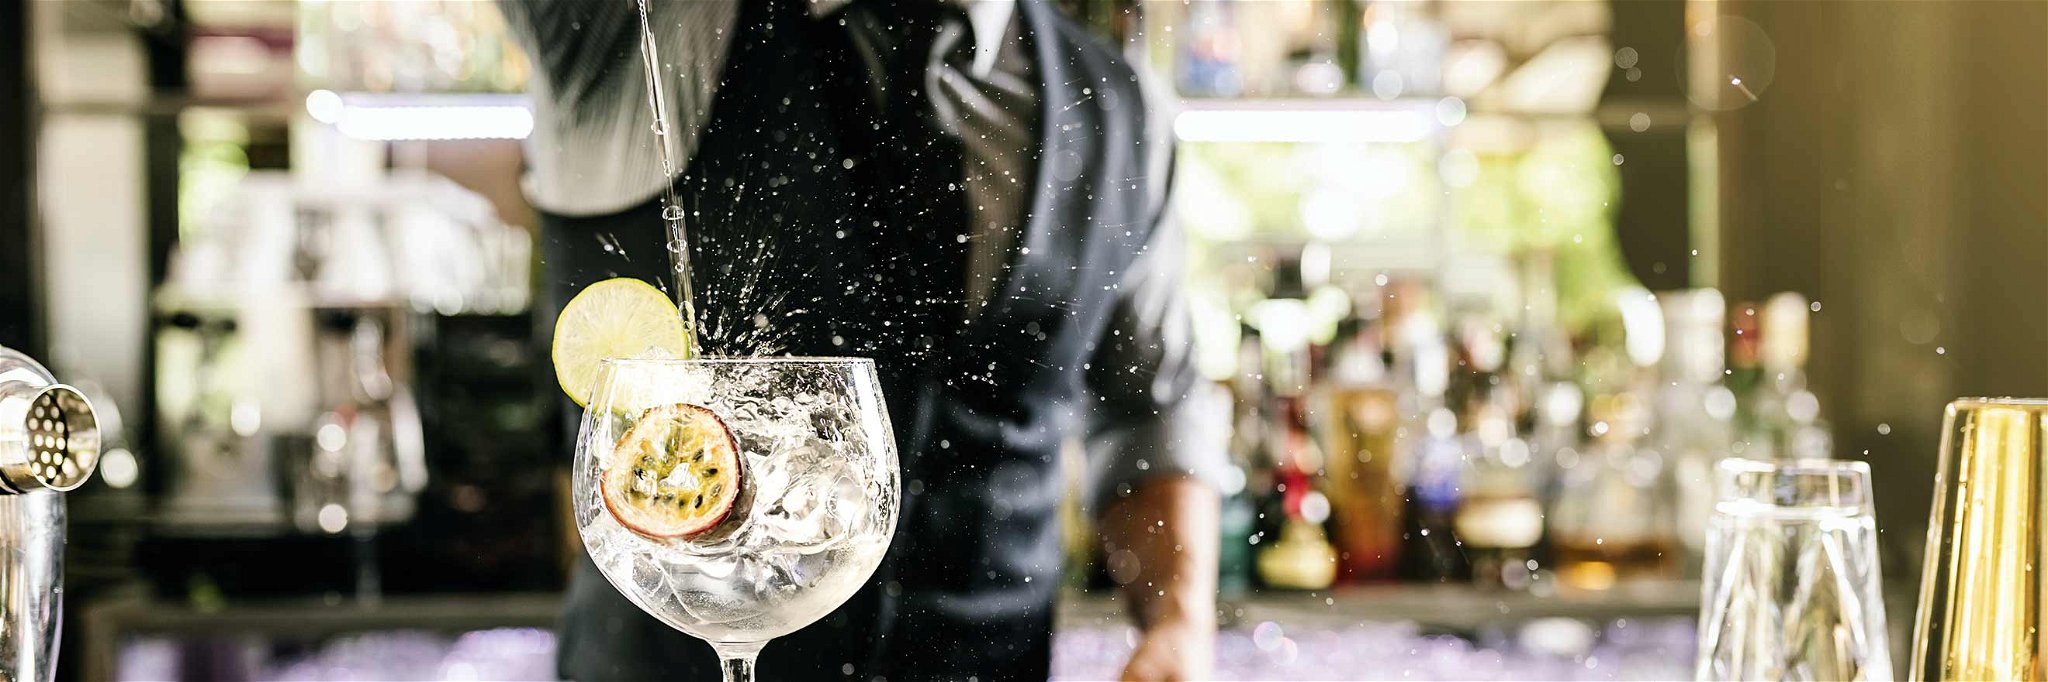 Gin ist bereits seit dem 19. Jahrhundert Nationalgetränk in England. Derzeit erlebt er eine weltweite Renaissance und gilt als eine der trendigsten Spirituosen überhaupt.